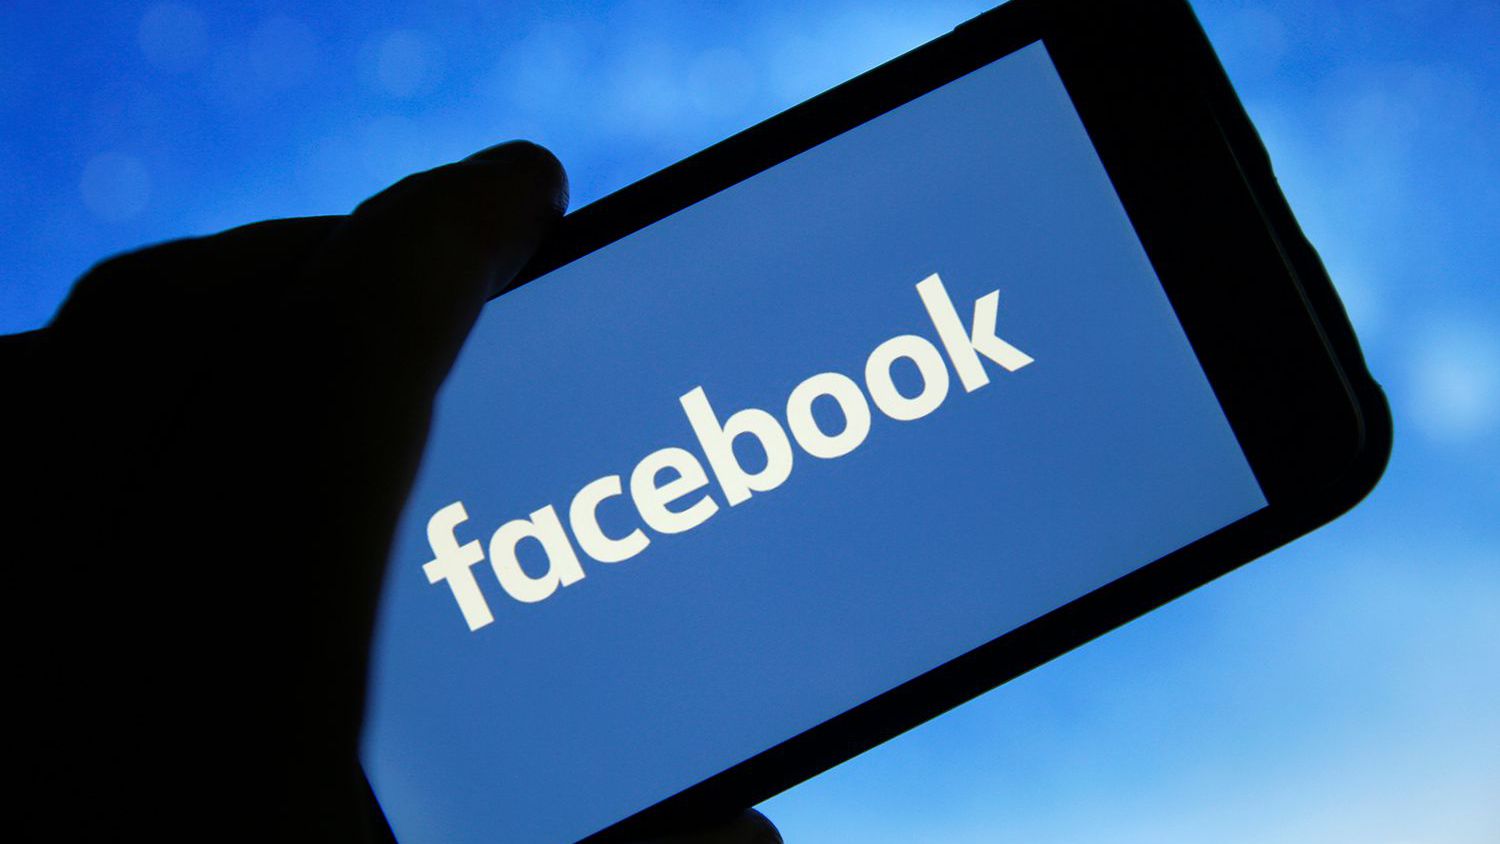 Facebook Messenger nu funcționează. România, printre multe alte țări, este afectată